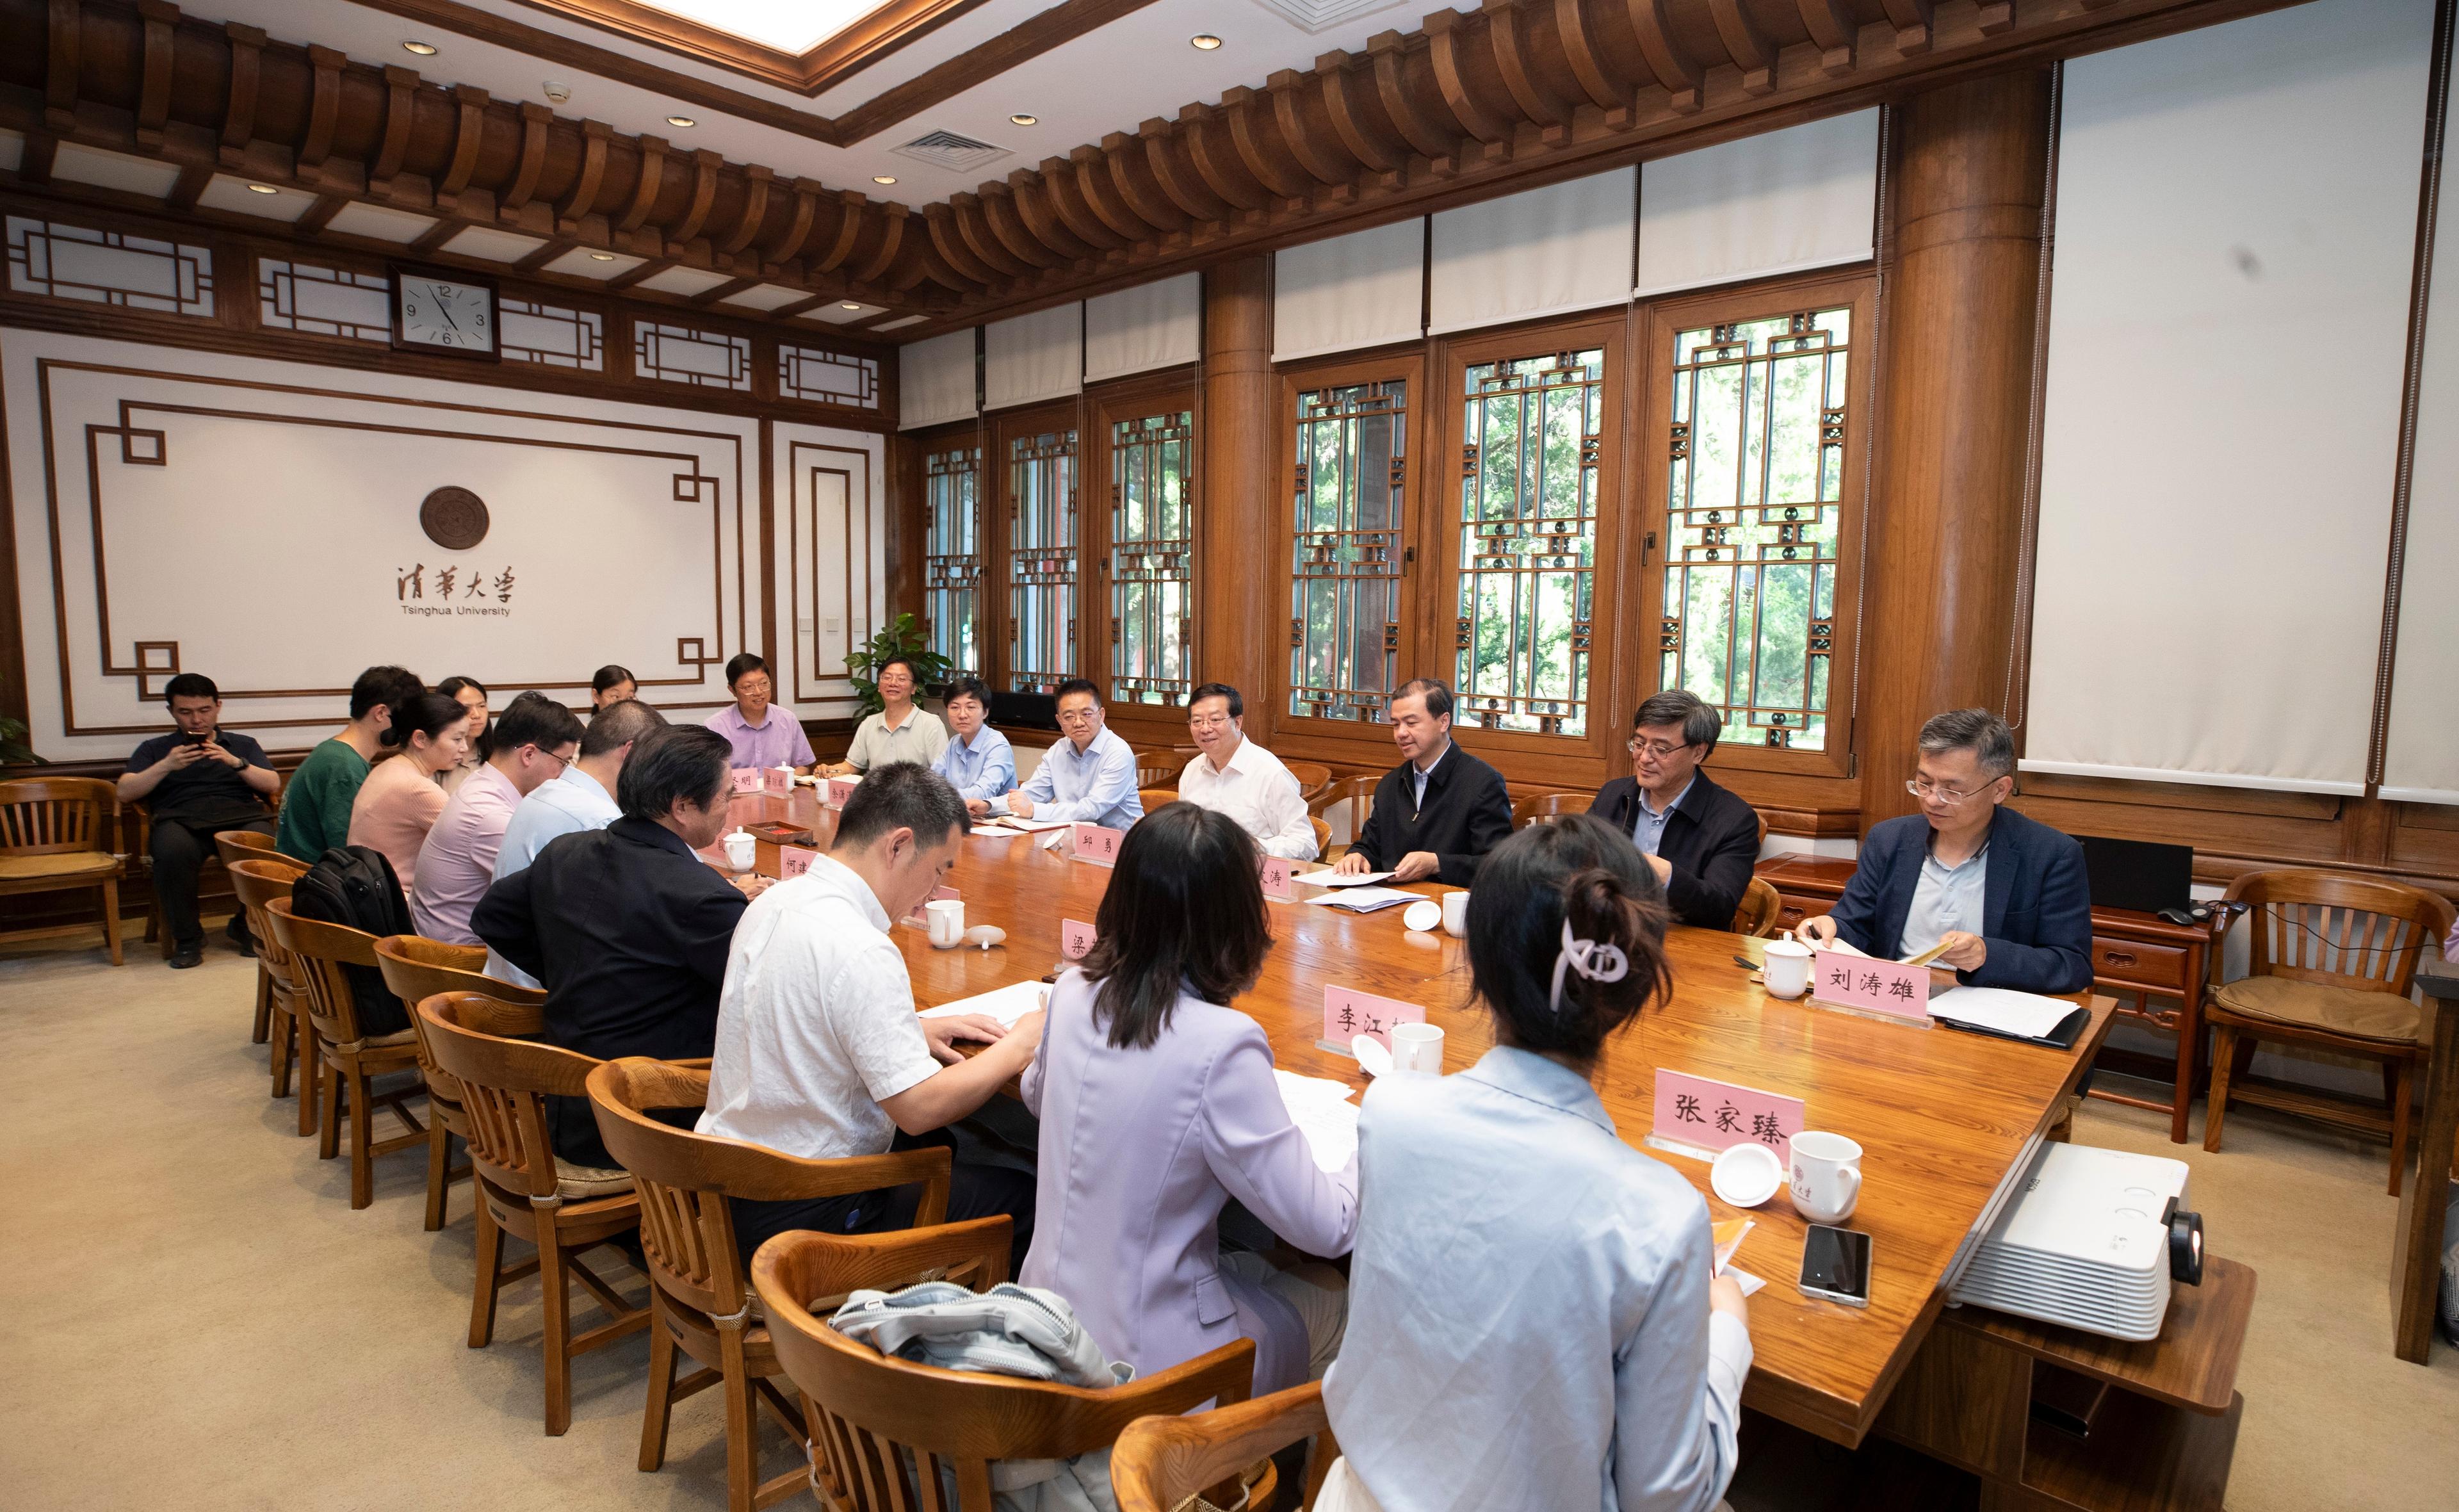 清华大学召开专题座谈会部署推动思政课建设